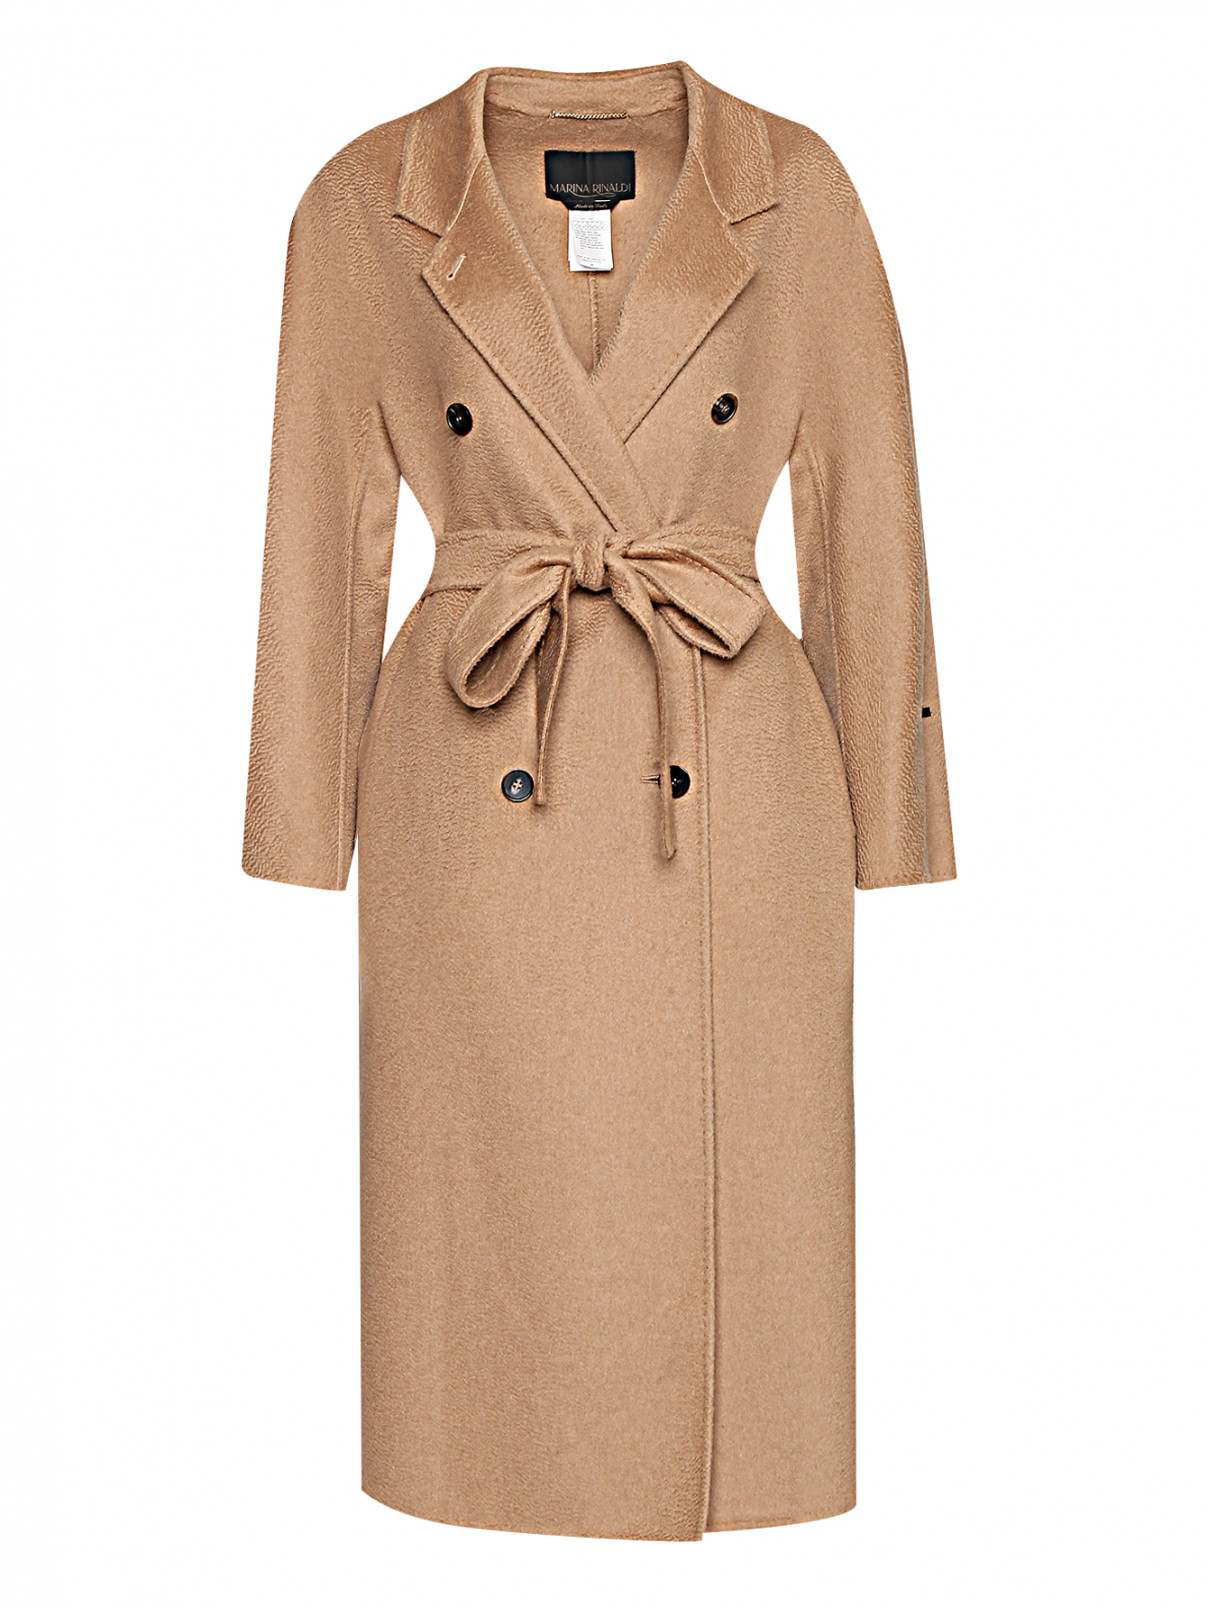 Пальто из шерсти с поясом Marina Rinaldi  –  Общий вид  – Цвет:  Бежевый